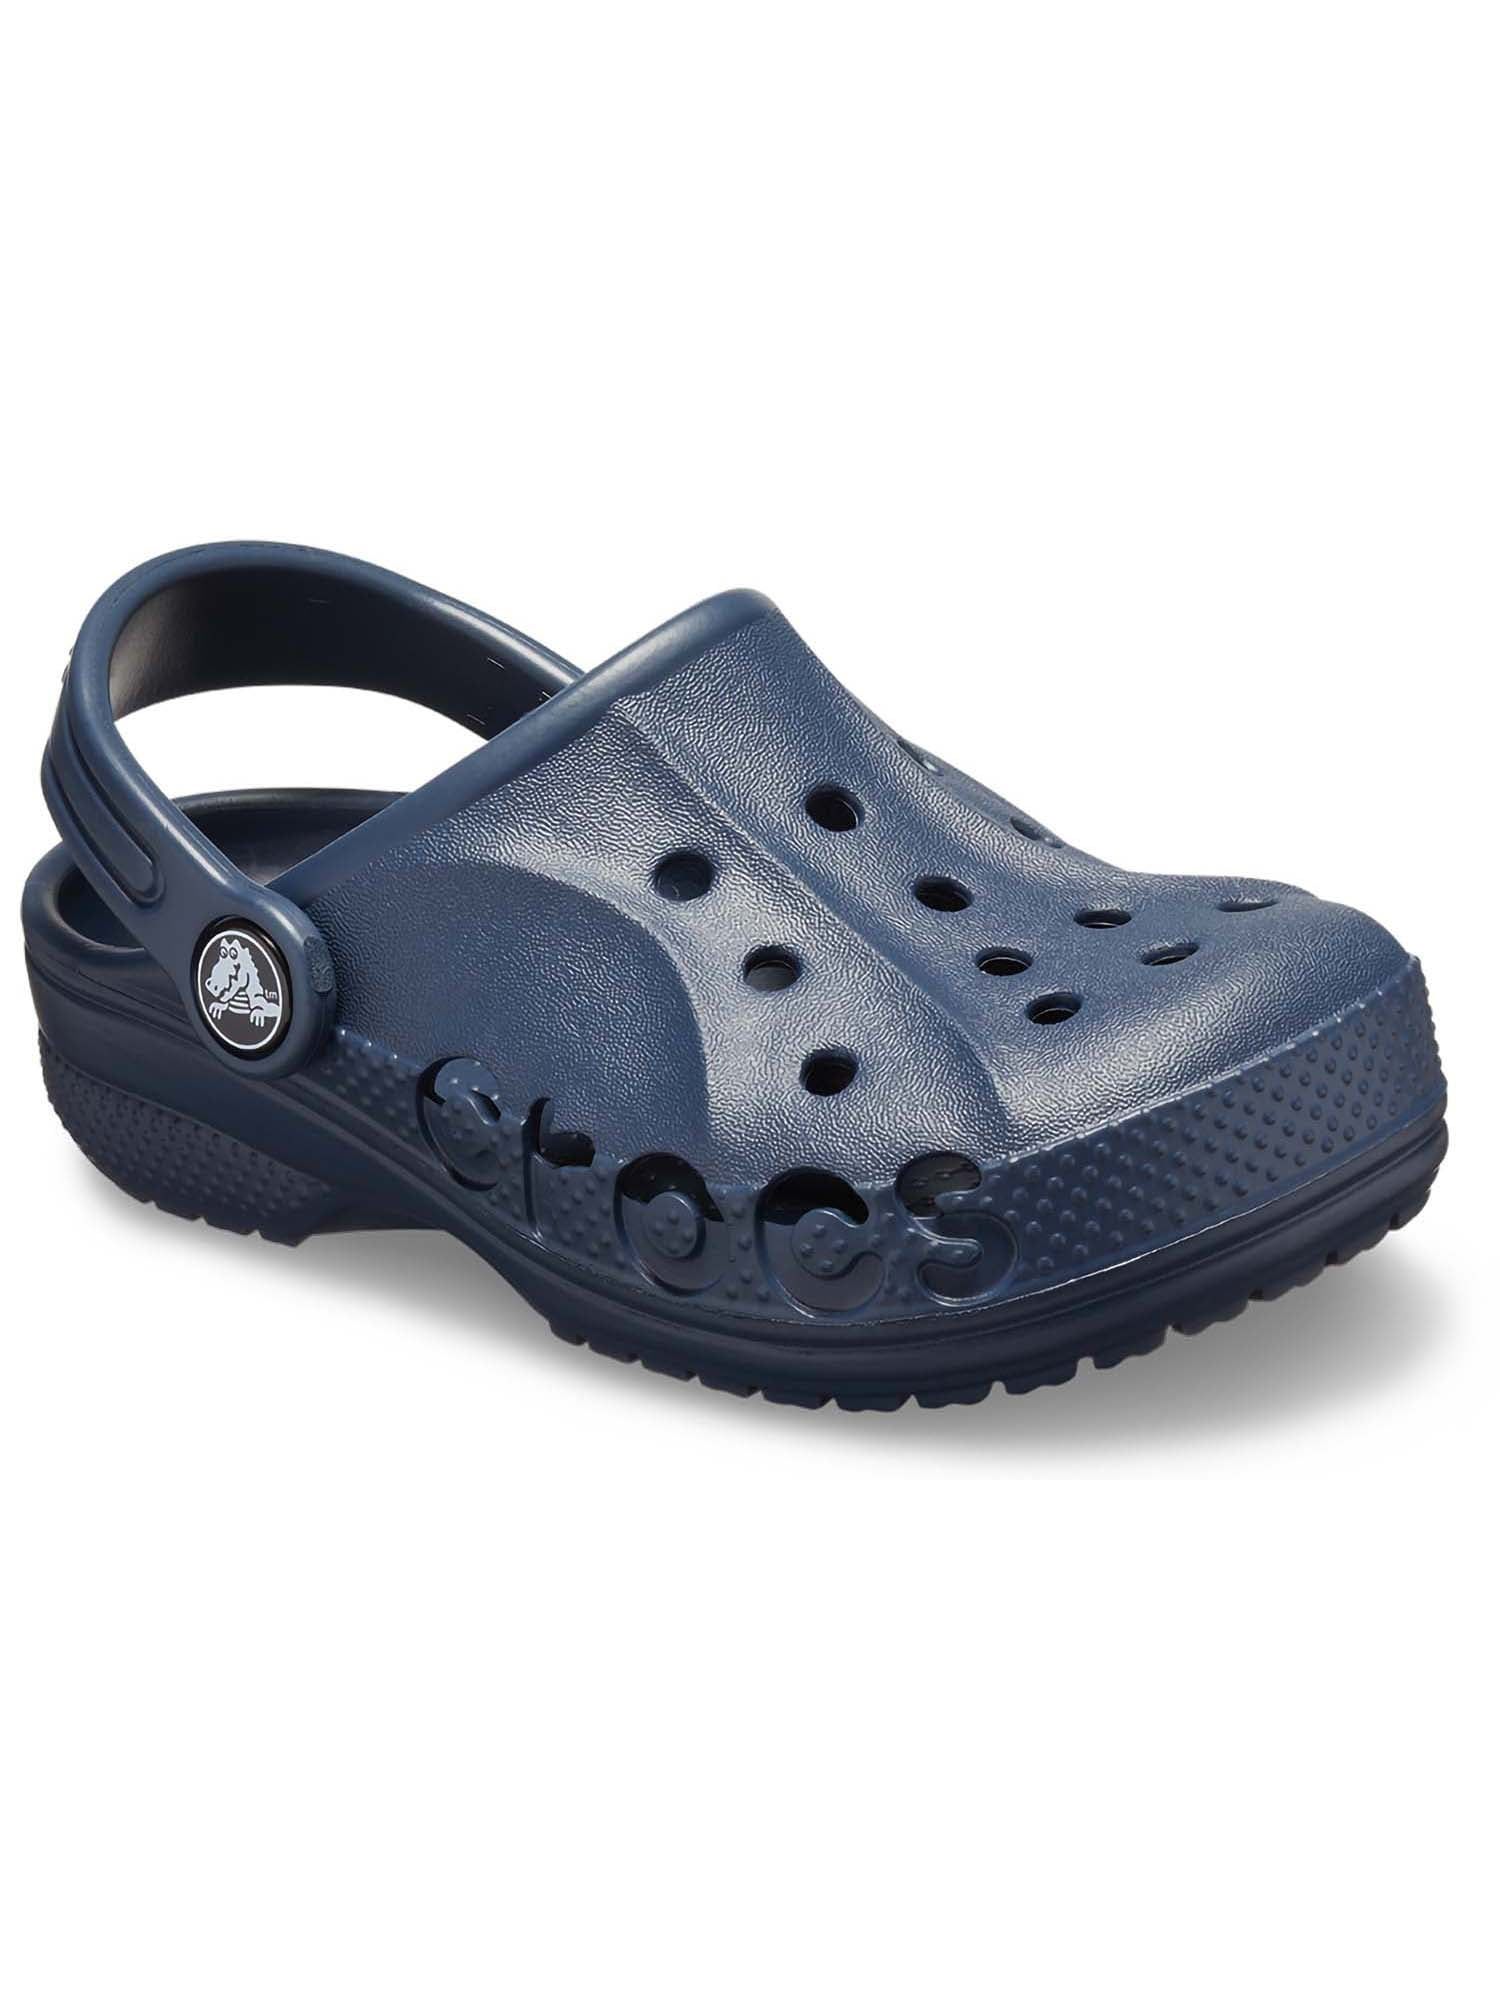 Crocs Toddler & Kids Baya Clog Sandal, Sizes 4-3 | Walmart (US)